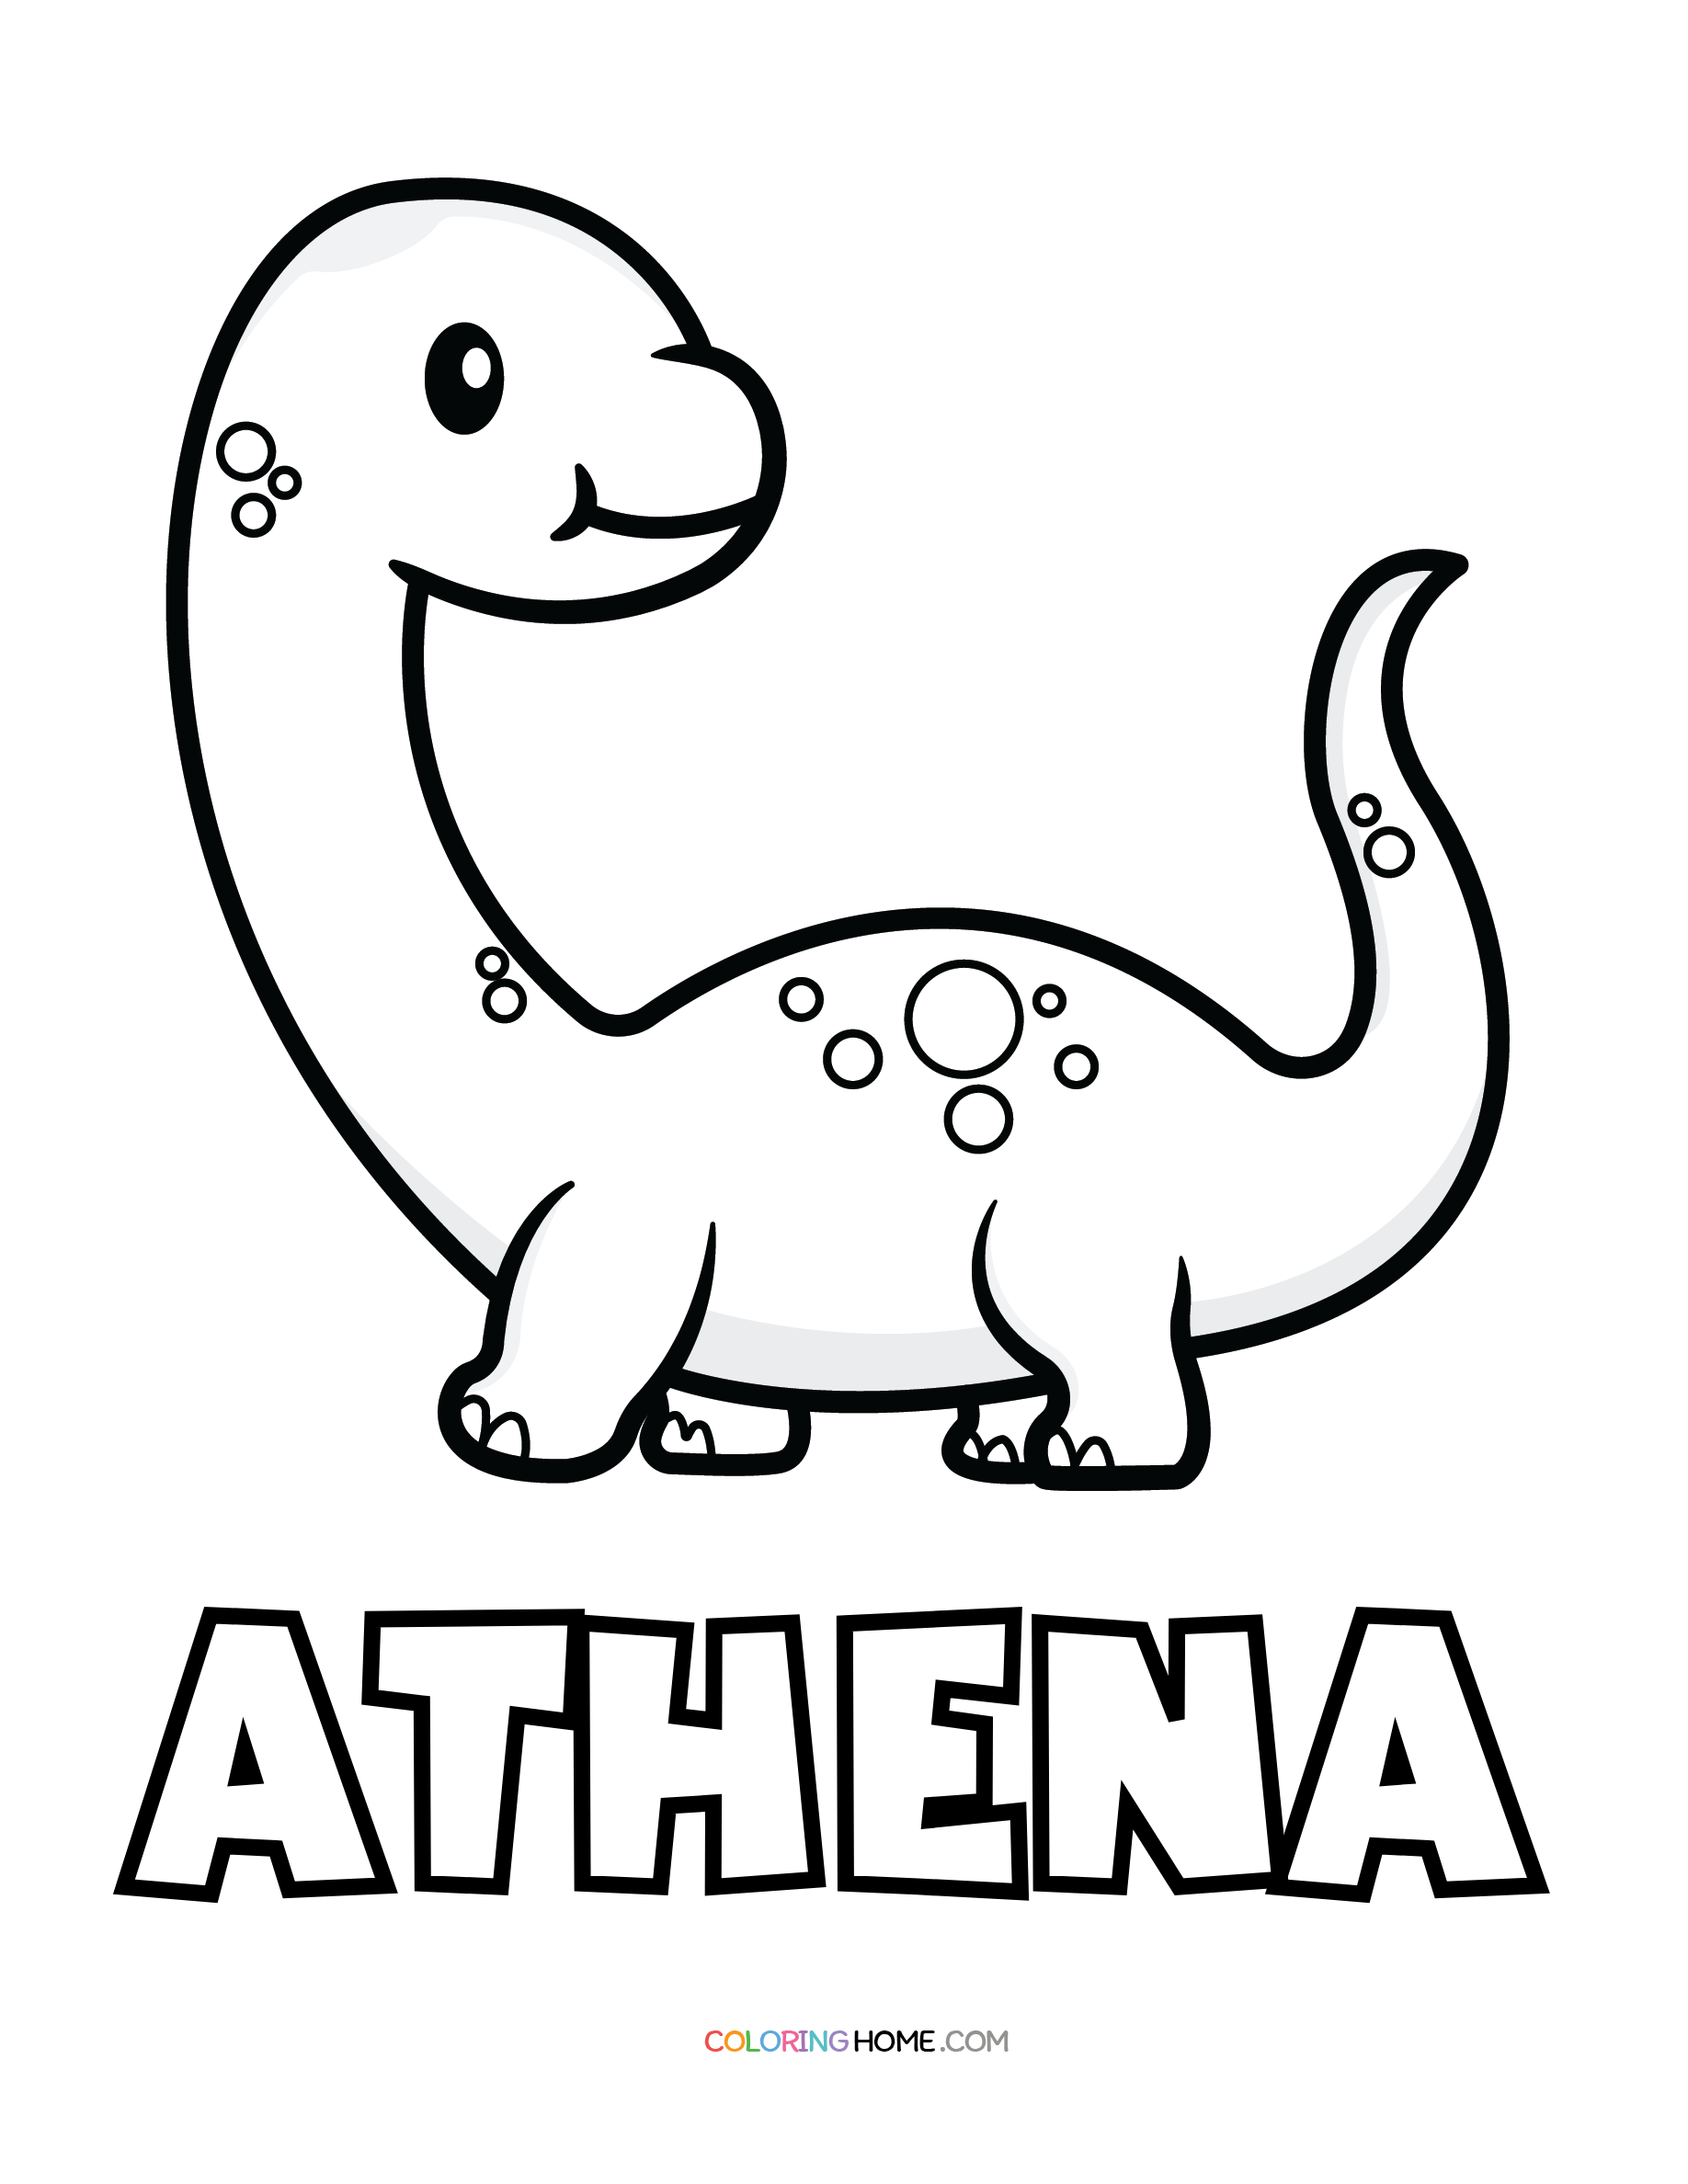 Athena dinosaur coloring page